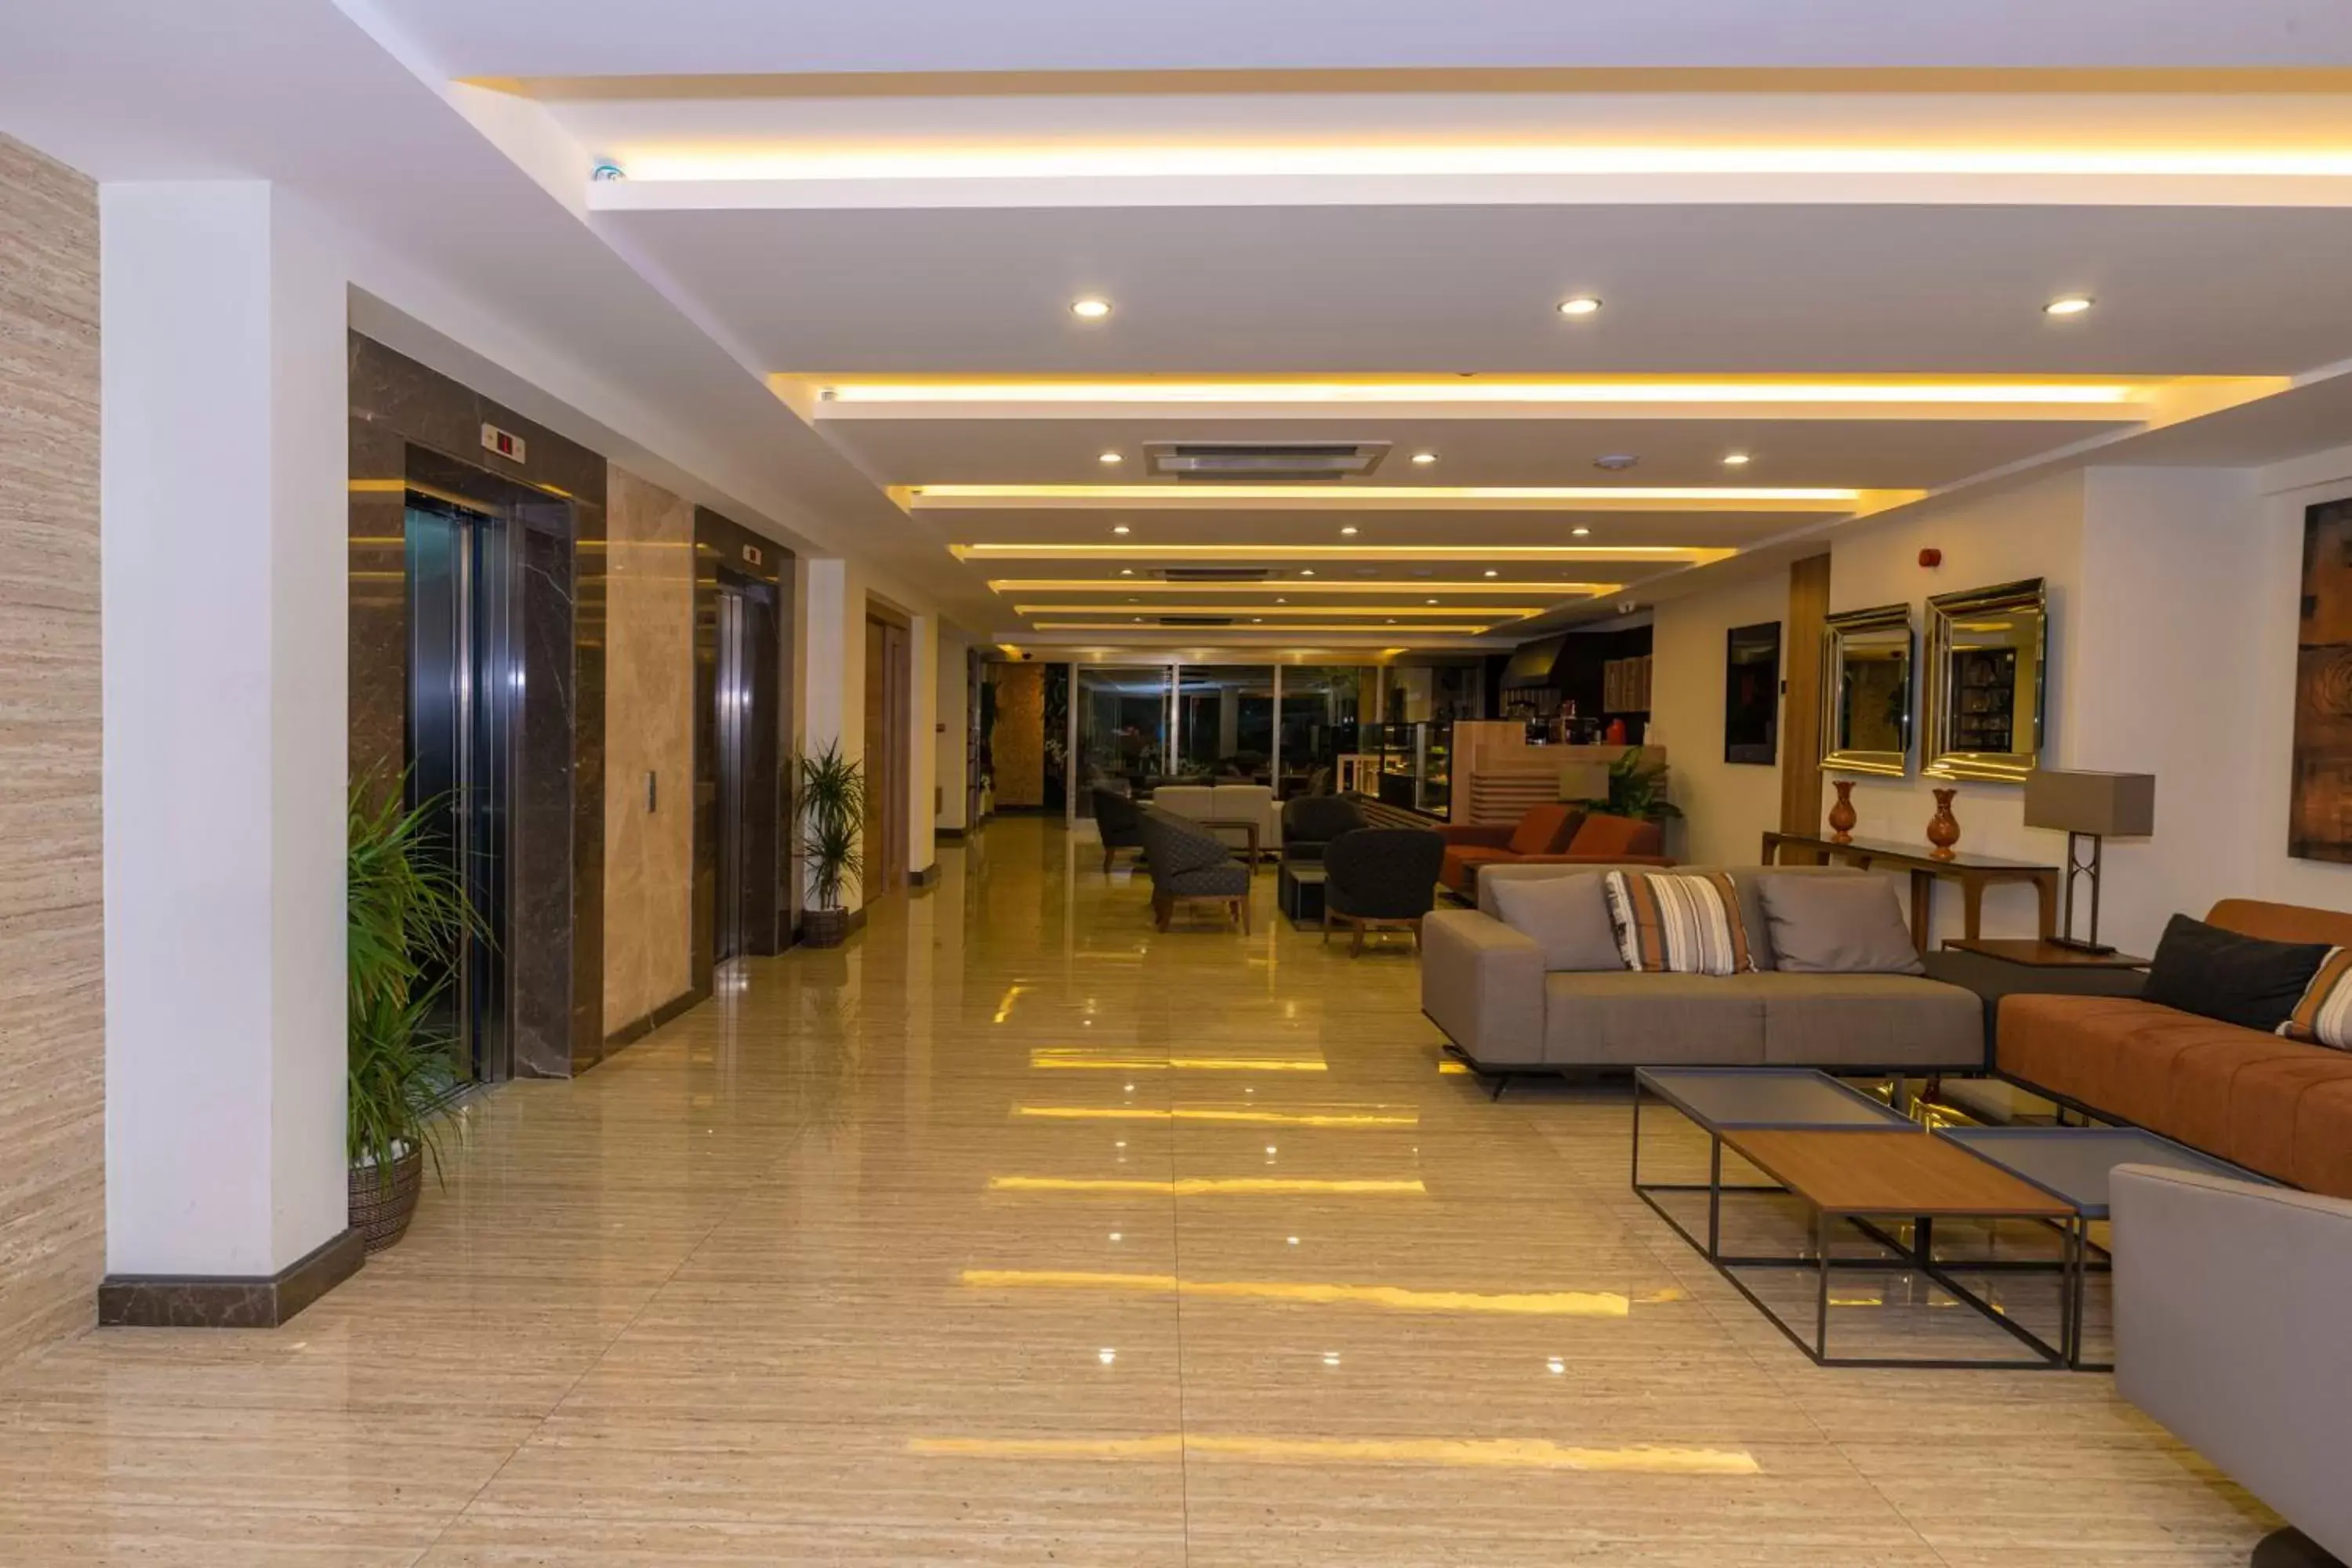 Lobby or reception, Lobby/Reception in 38 Hotel